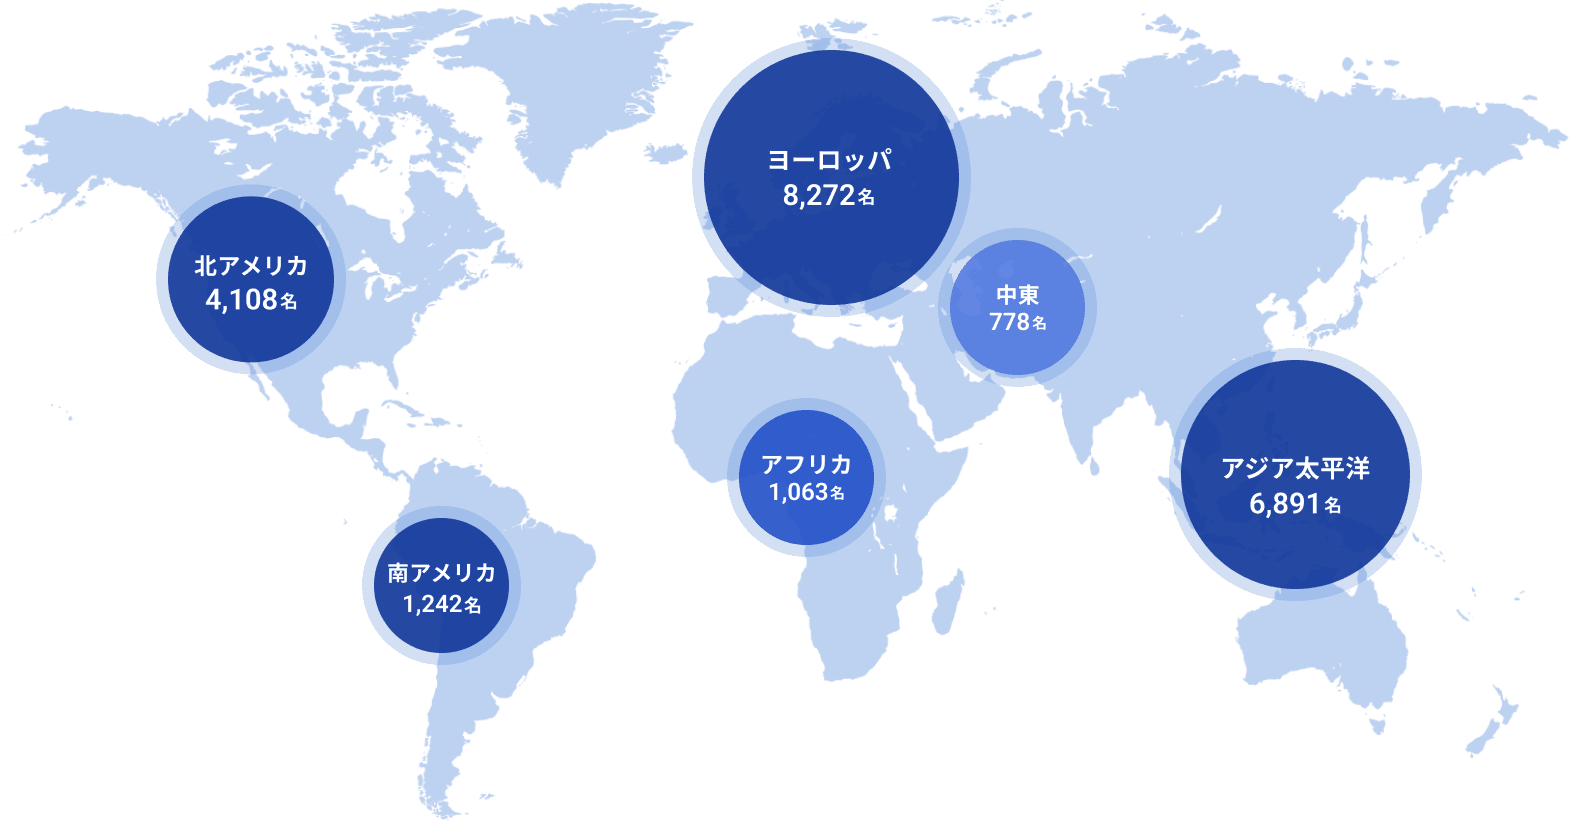 各国の専門家の連携規模の分布図